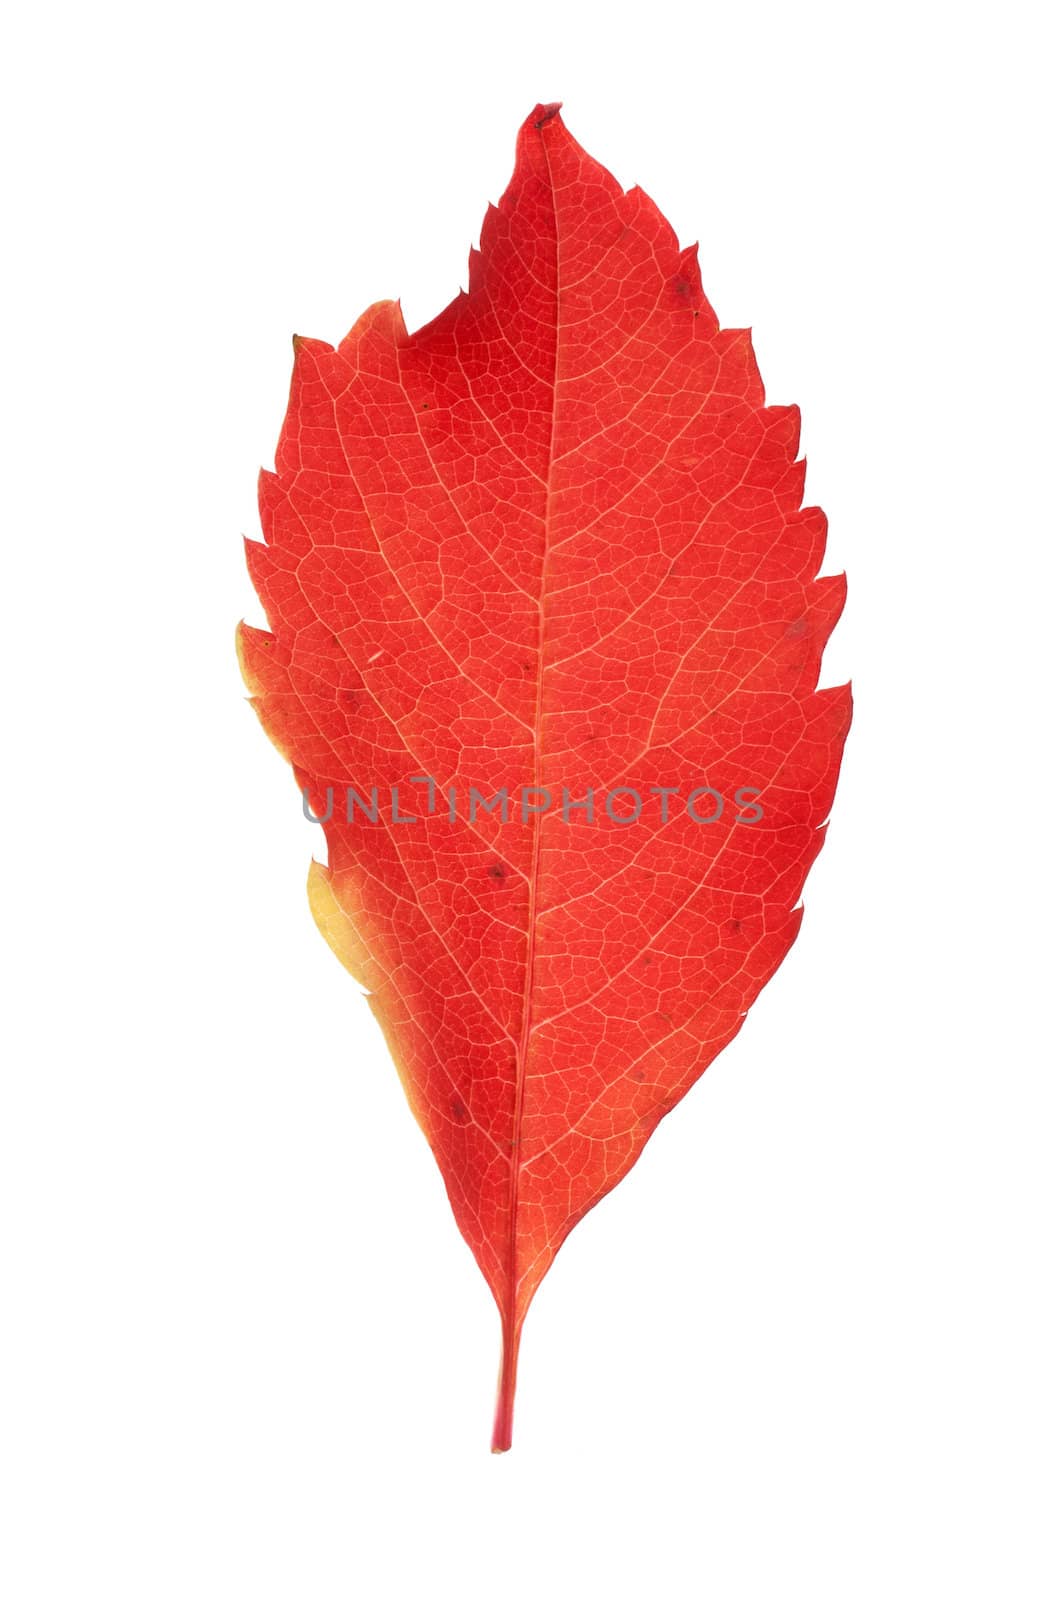 Autumn leaf by aguirre_mar